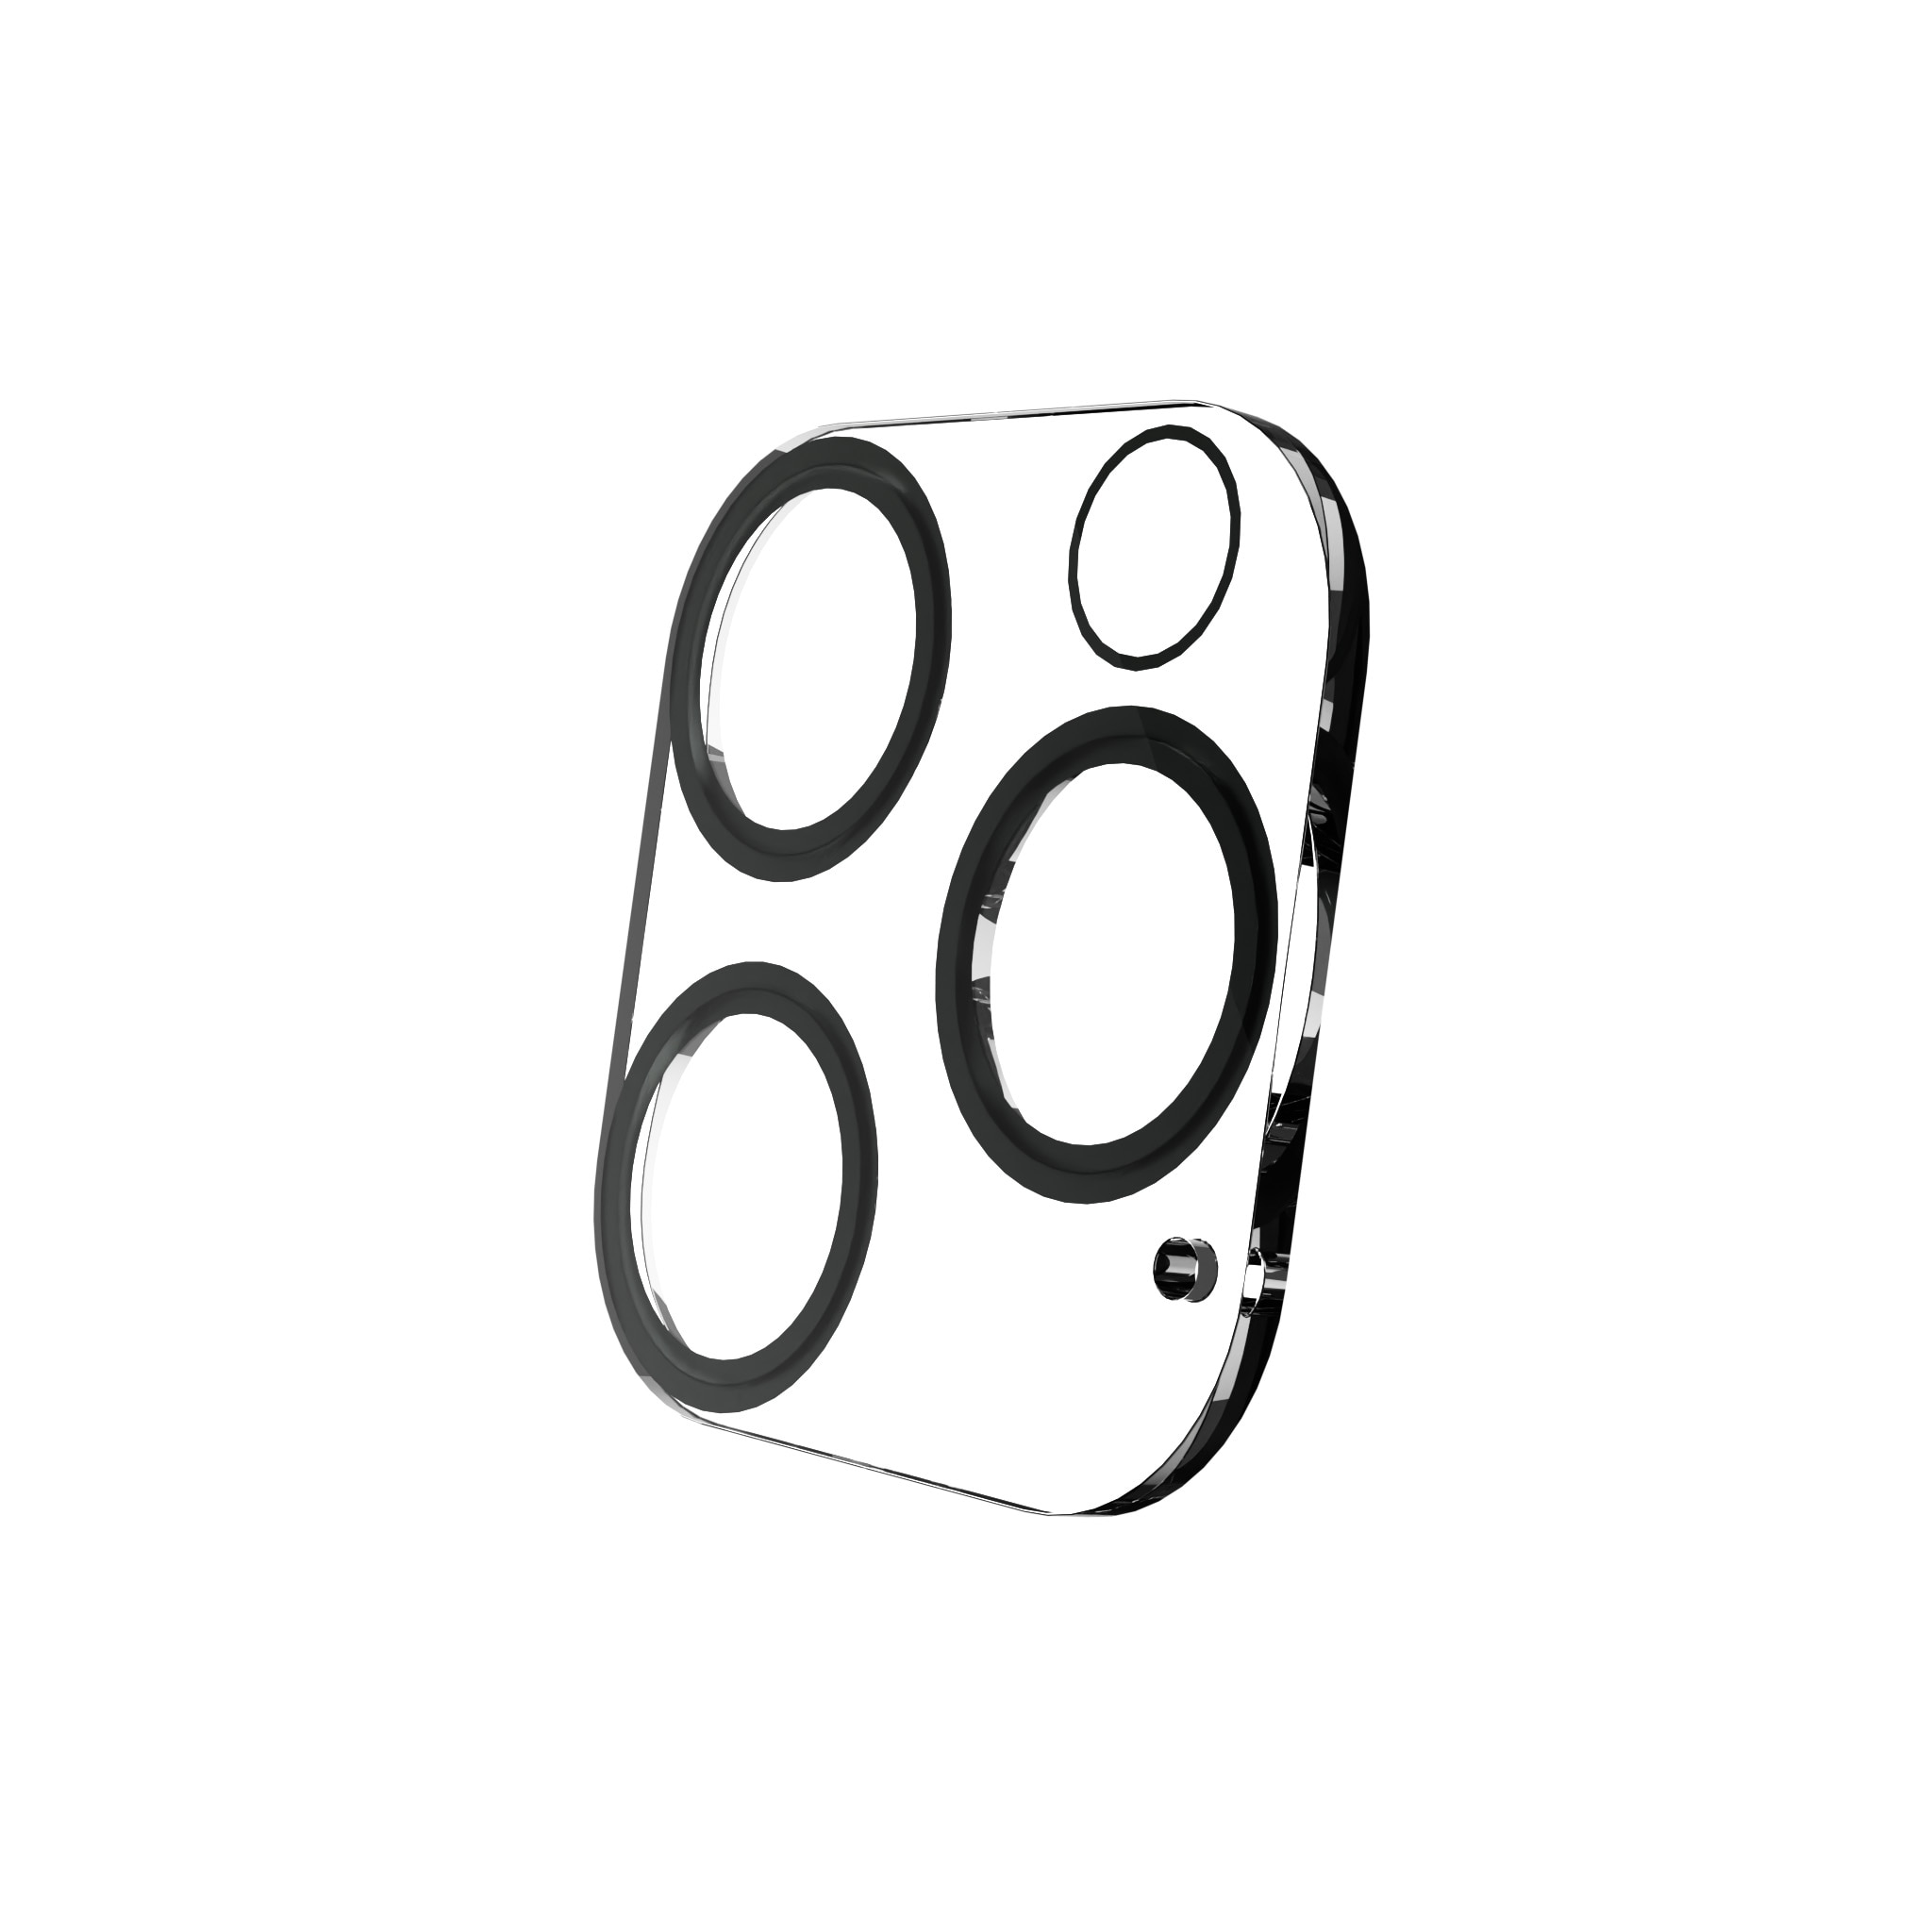 Protecteur de lentille Exoglass iPhone 15 Plus